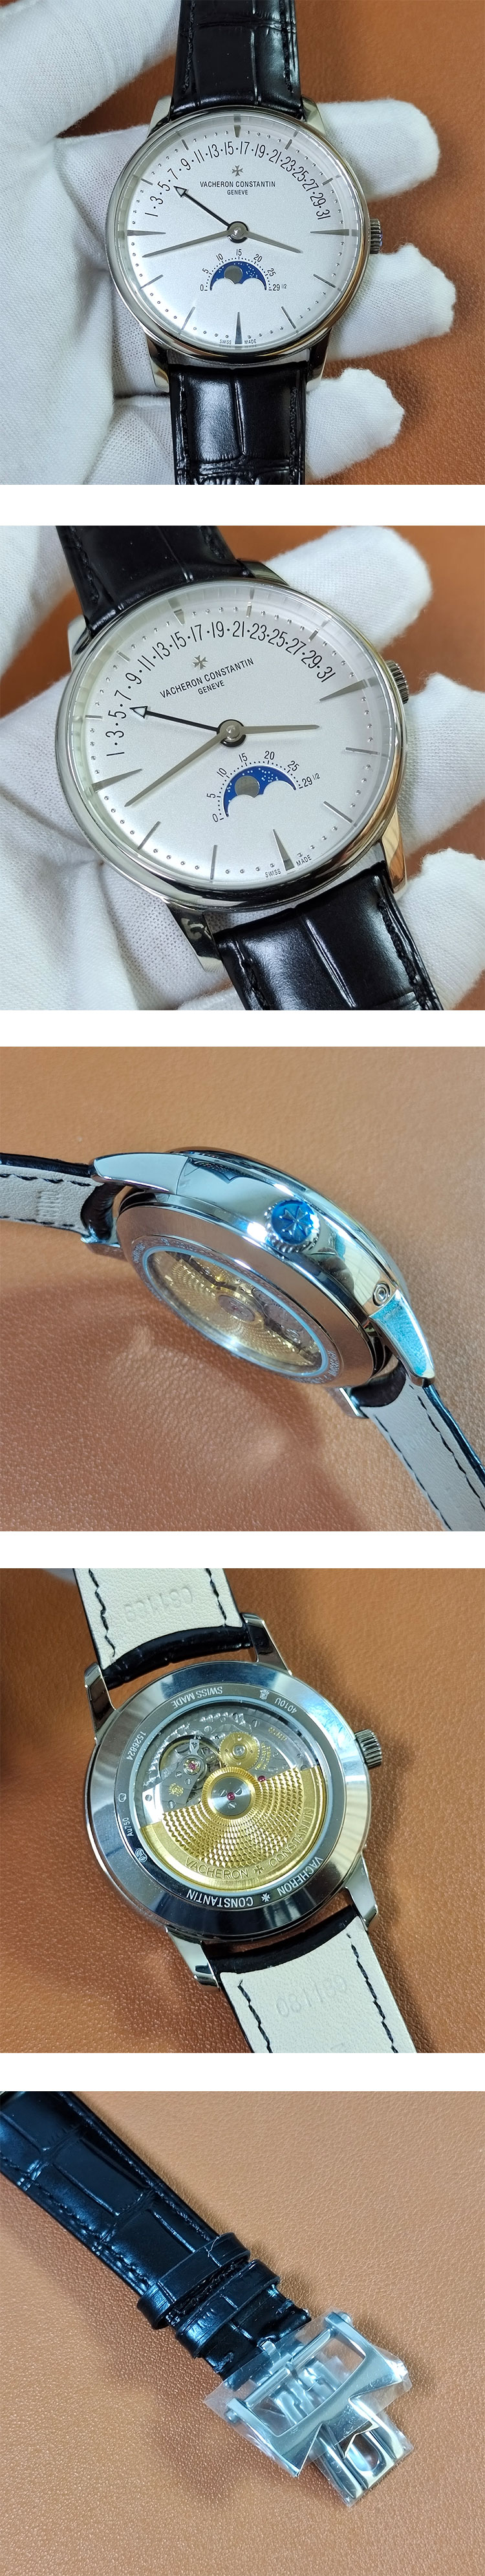 メンズ腕時計 ヴァシュロン・コンスタンタンコピー ムーンフェイズ&レトログラード・デイト 4010U/000G-B330 ホワイト